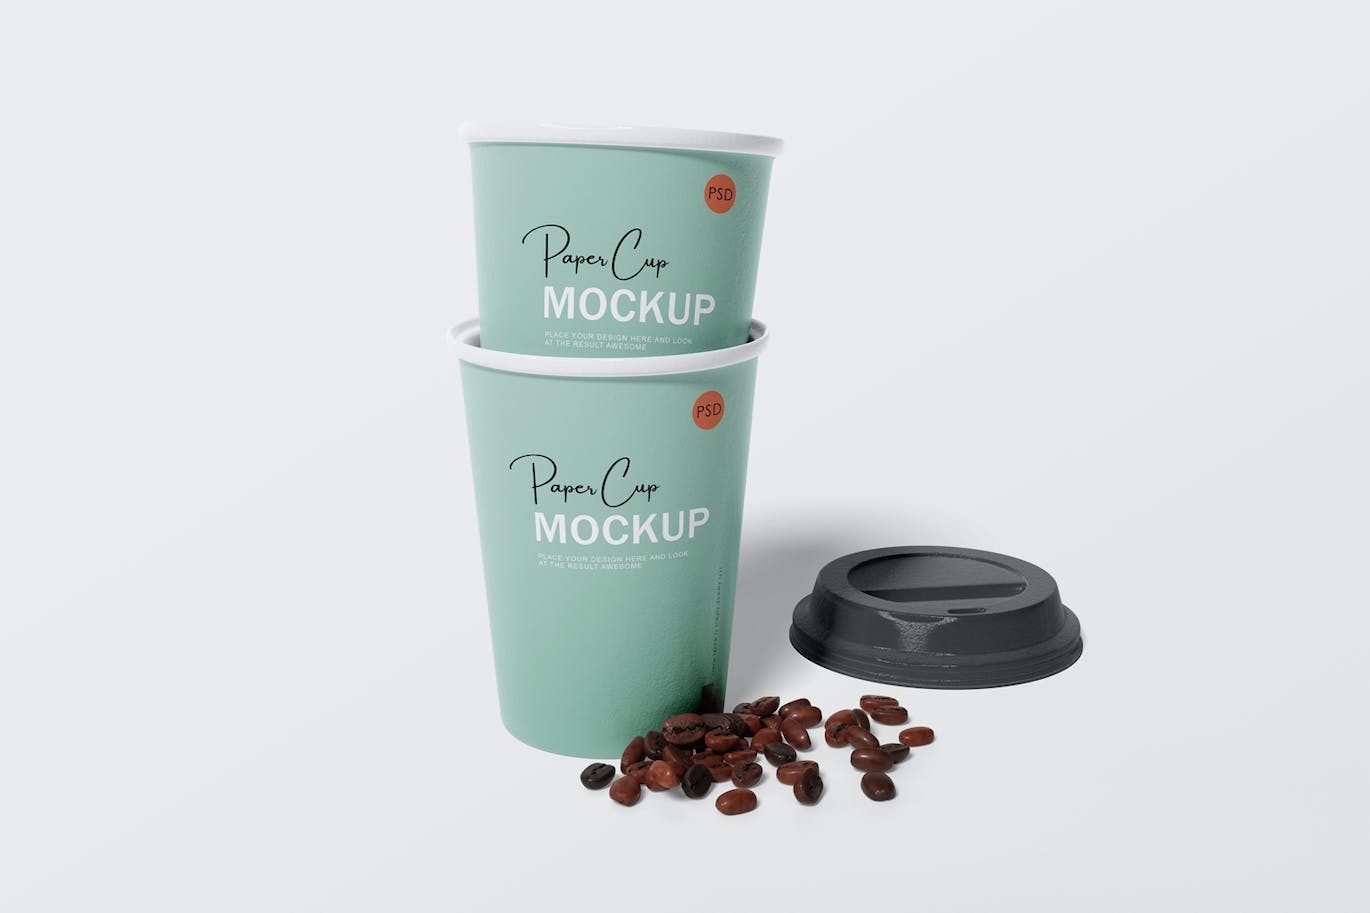 纸咖啡杯品牌设计样机 Paper coffee cup mockup 样机素材 第7张